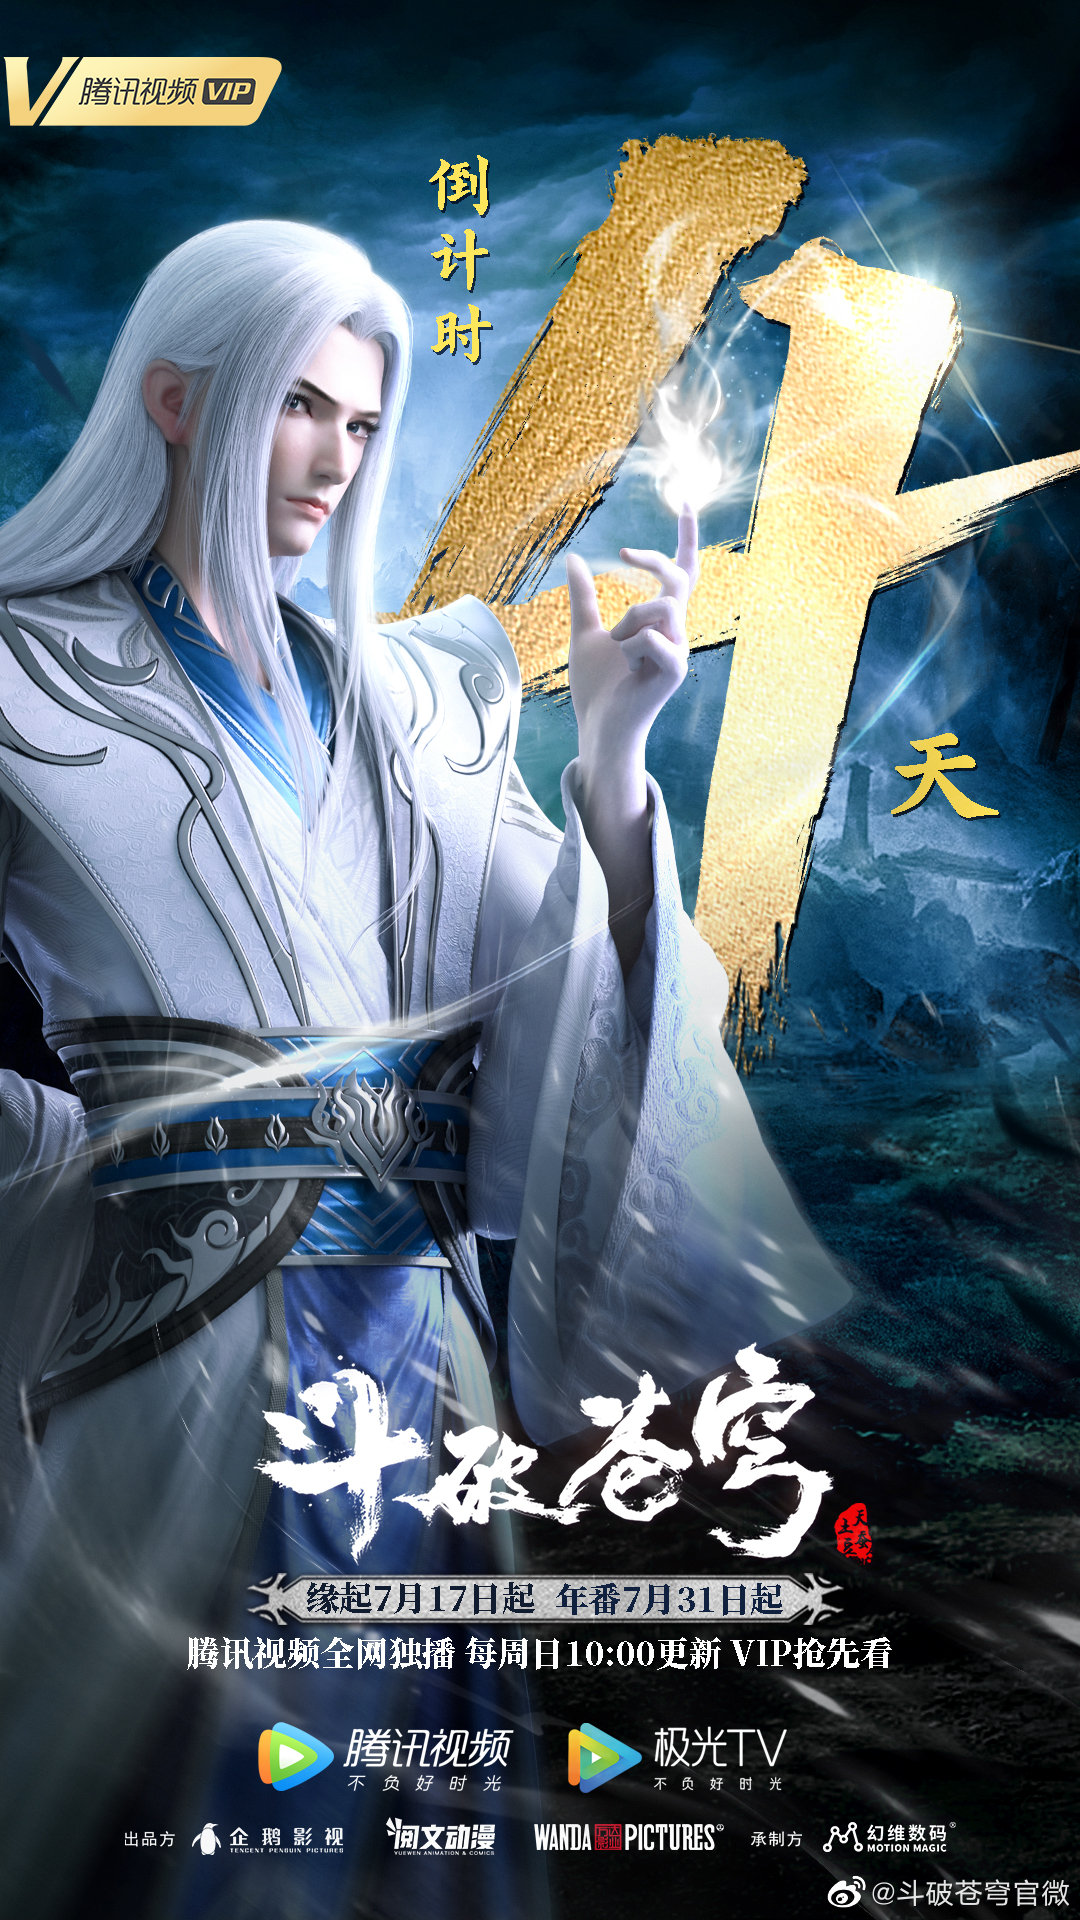 Xiao Ling, Battle Through the Heavens Wiki